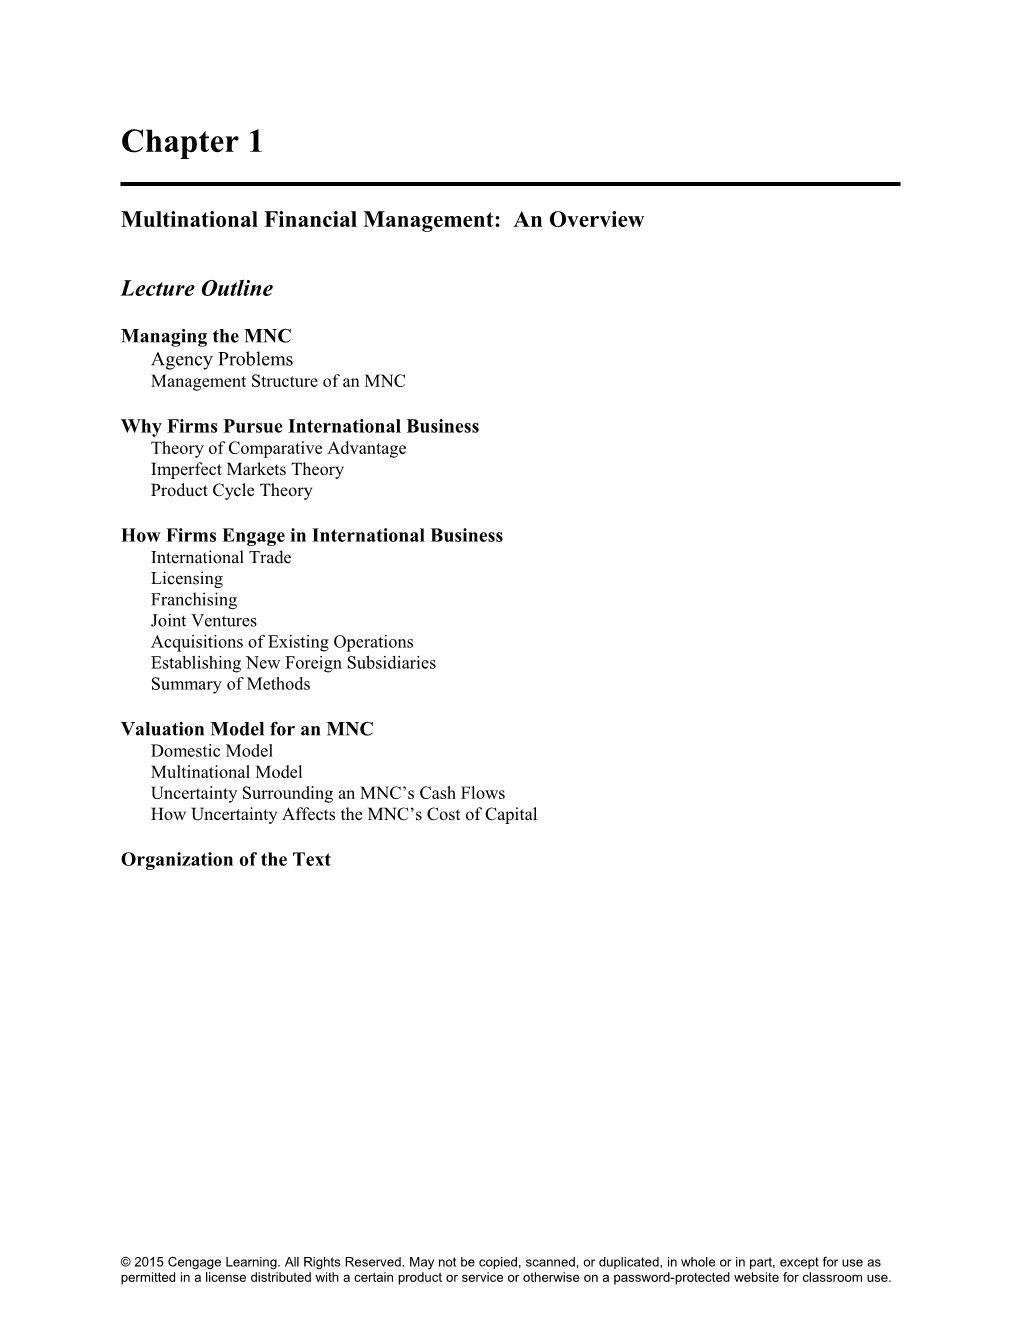 Multinational Financial Management: an Overview